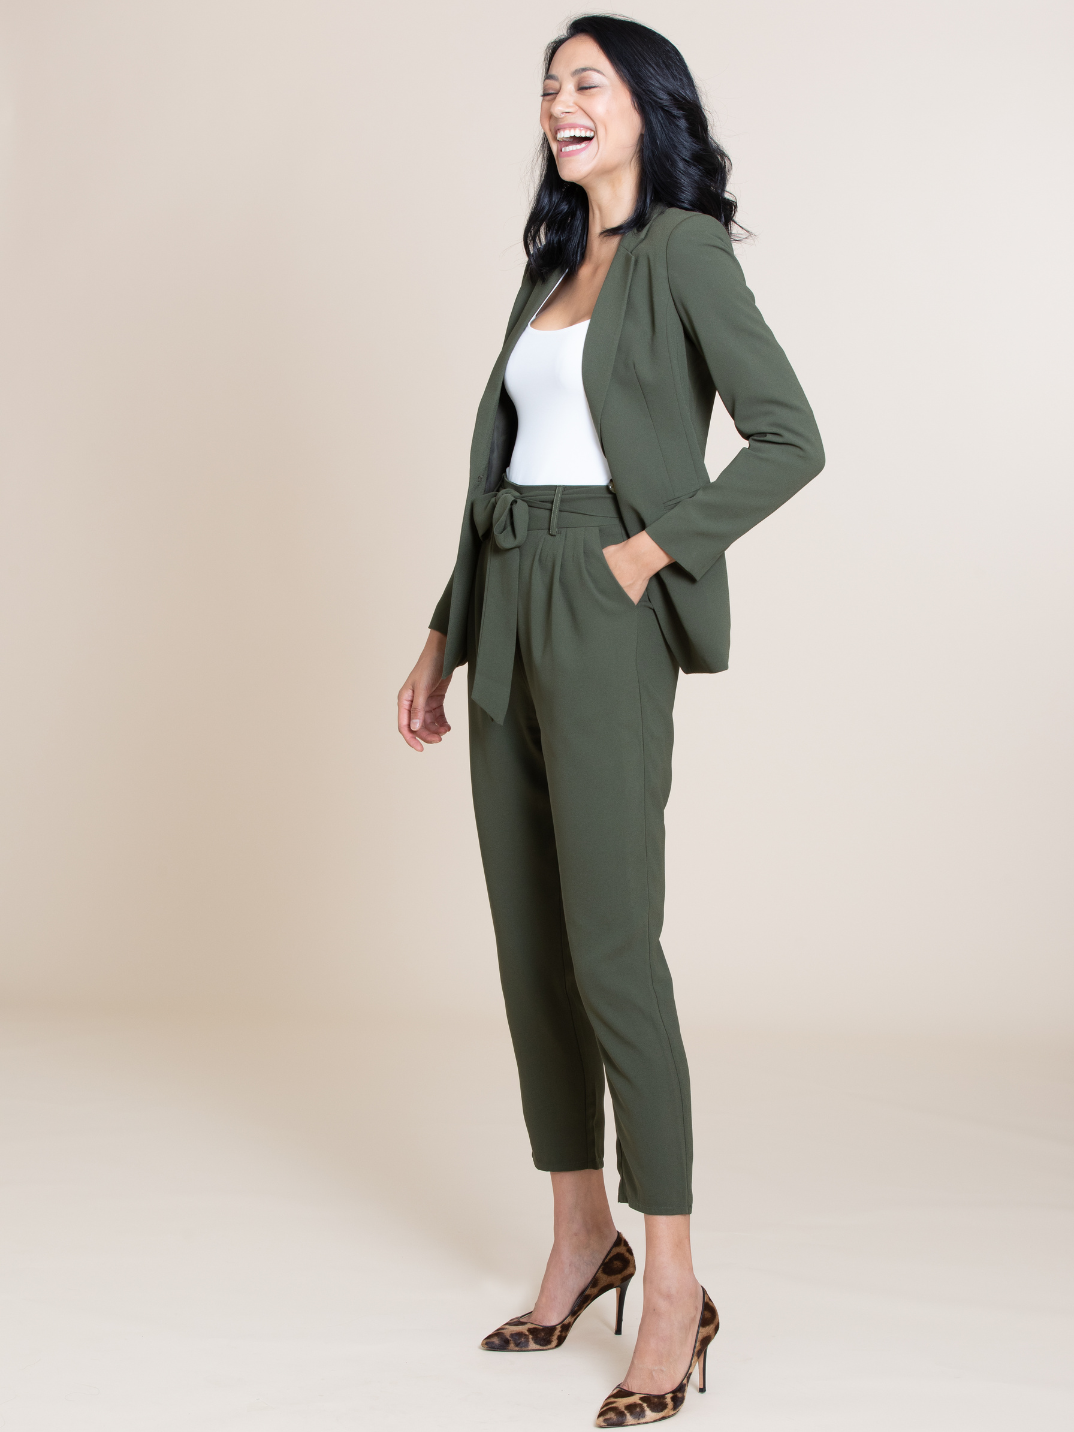 The Sienna Blazer everyday capsule wardrobe basics sustainable fashion